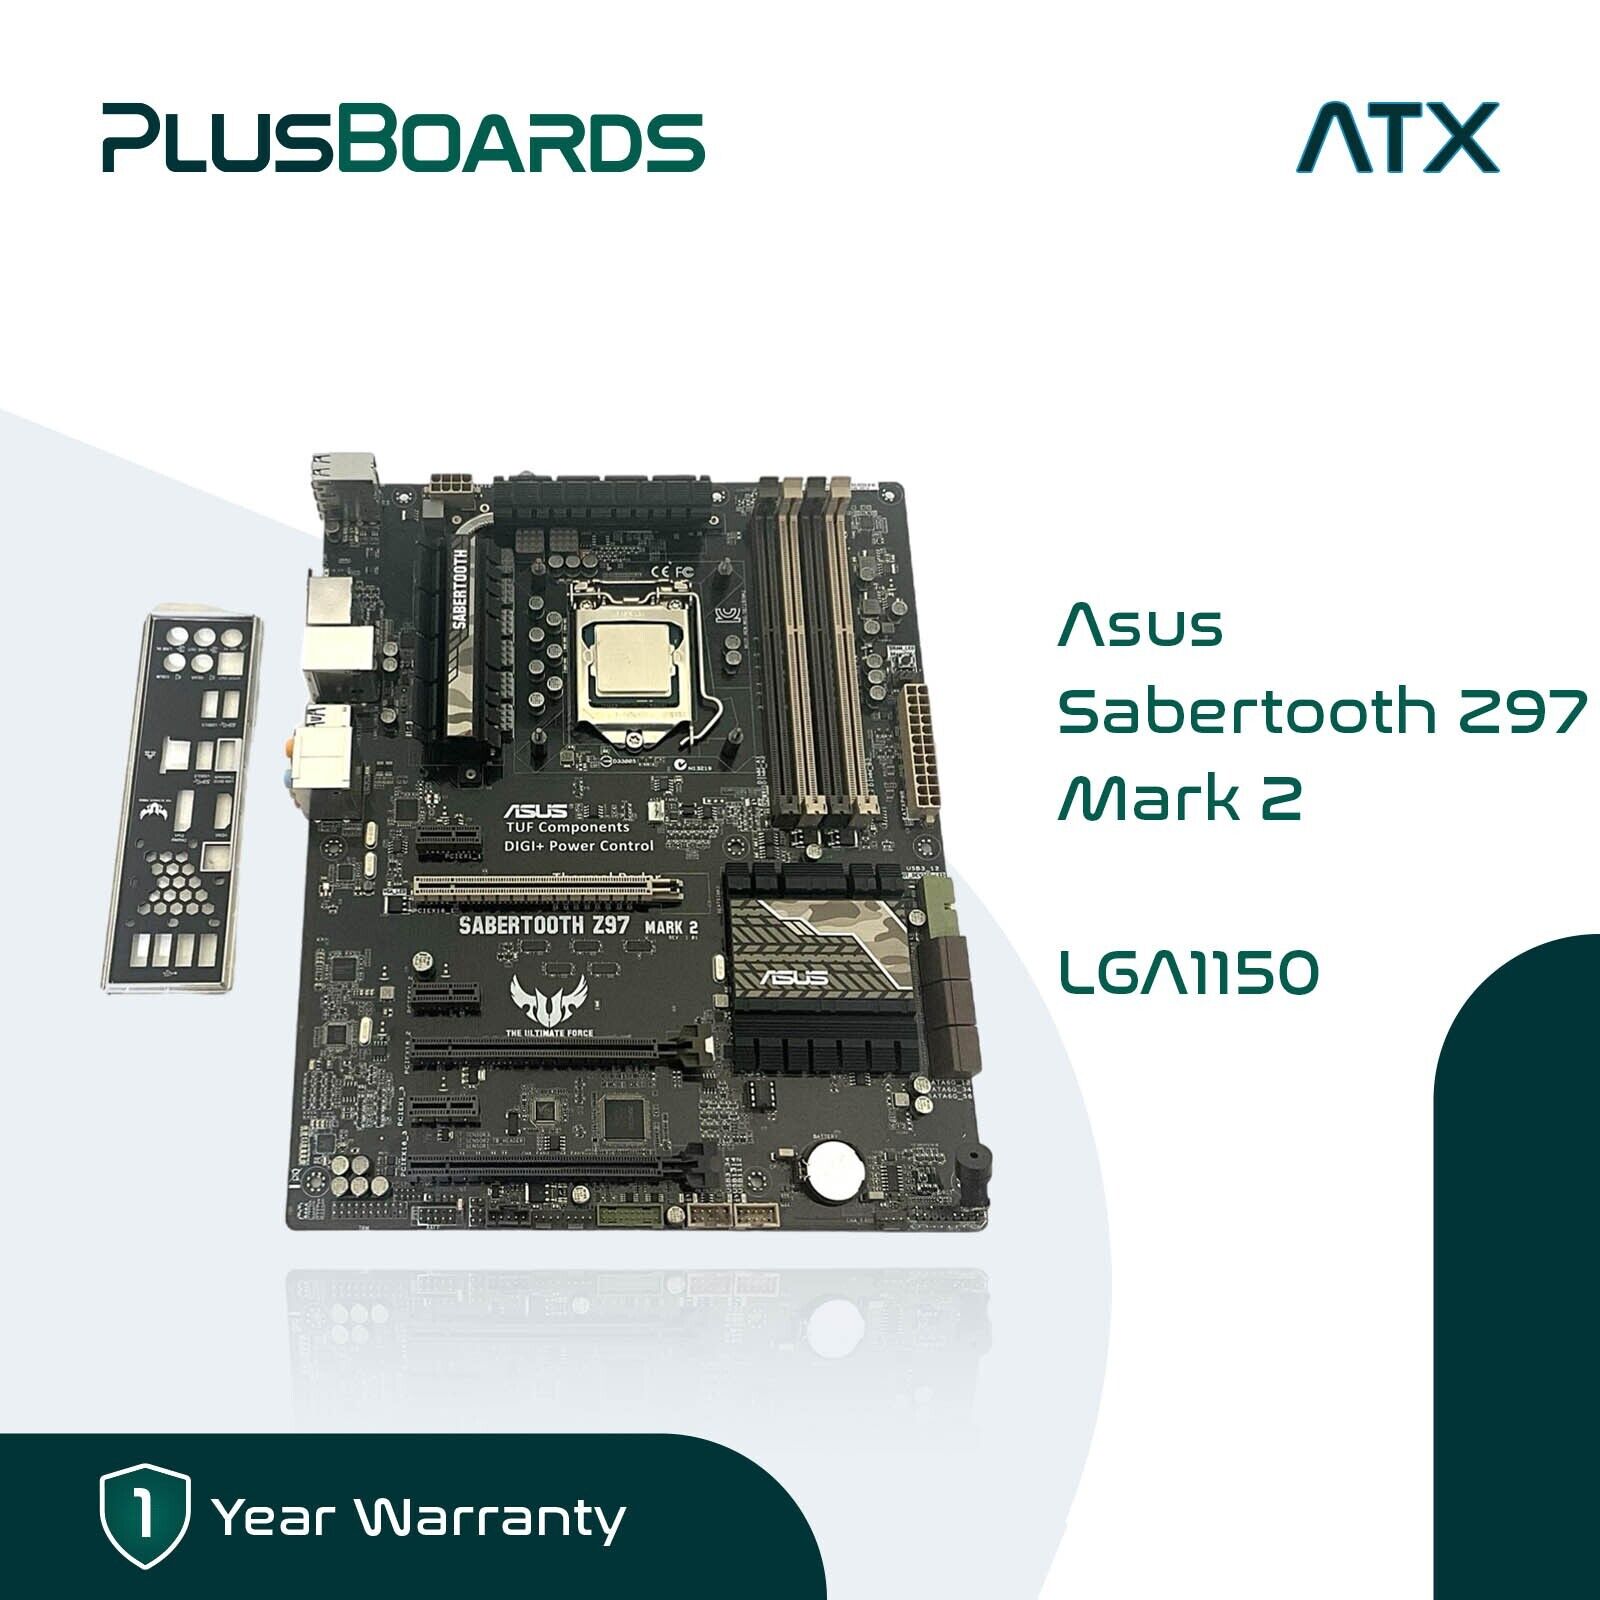 ASUS SABERTOOTH Z97 MARK 2 LGA1150 Z97 SATA 6Gb/s USB 3.0 i7-4790K 4.0GHz 4 Core